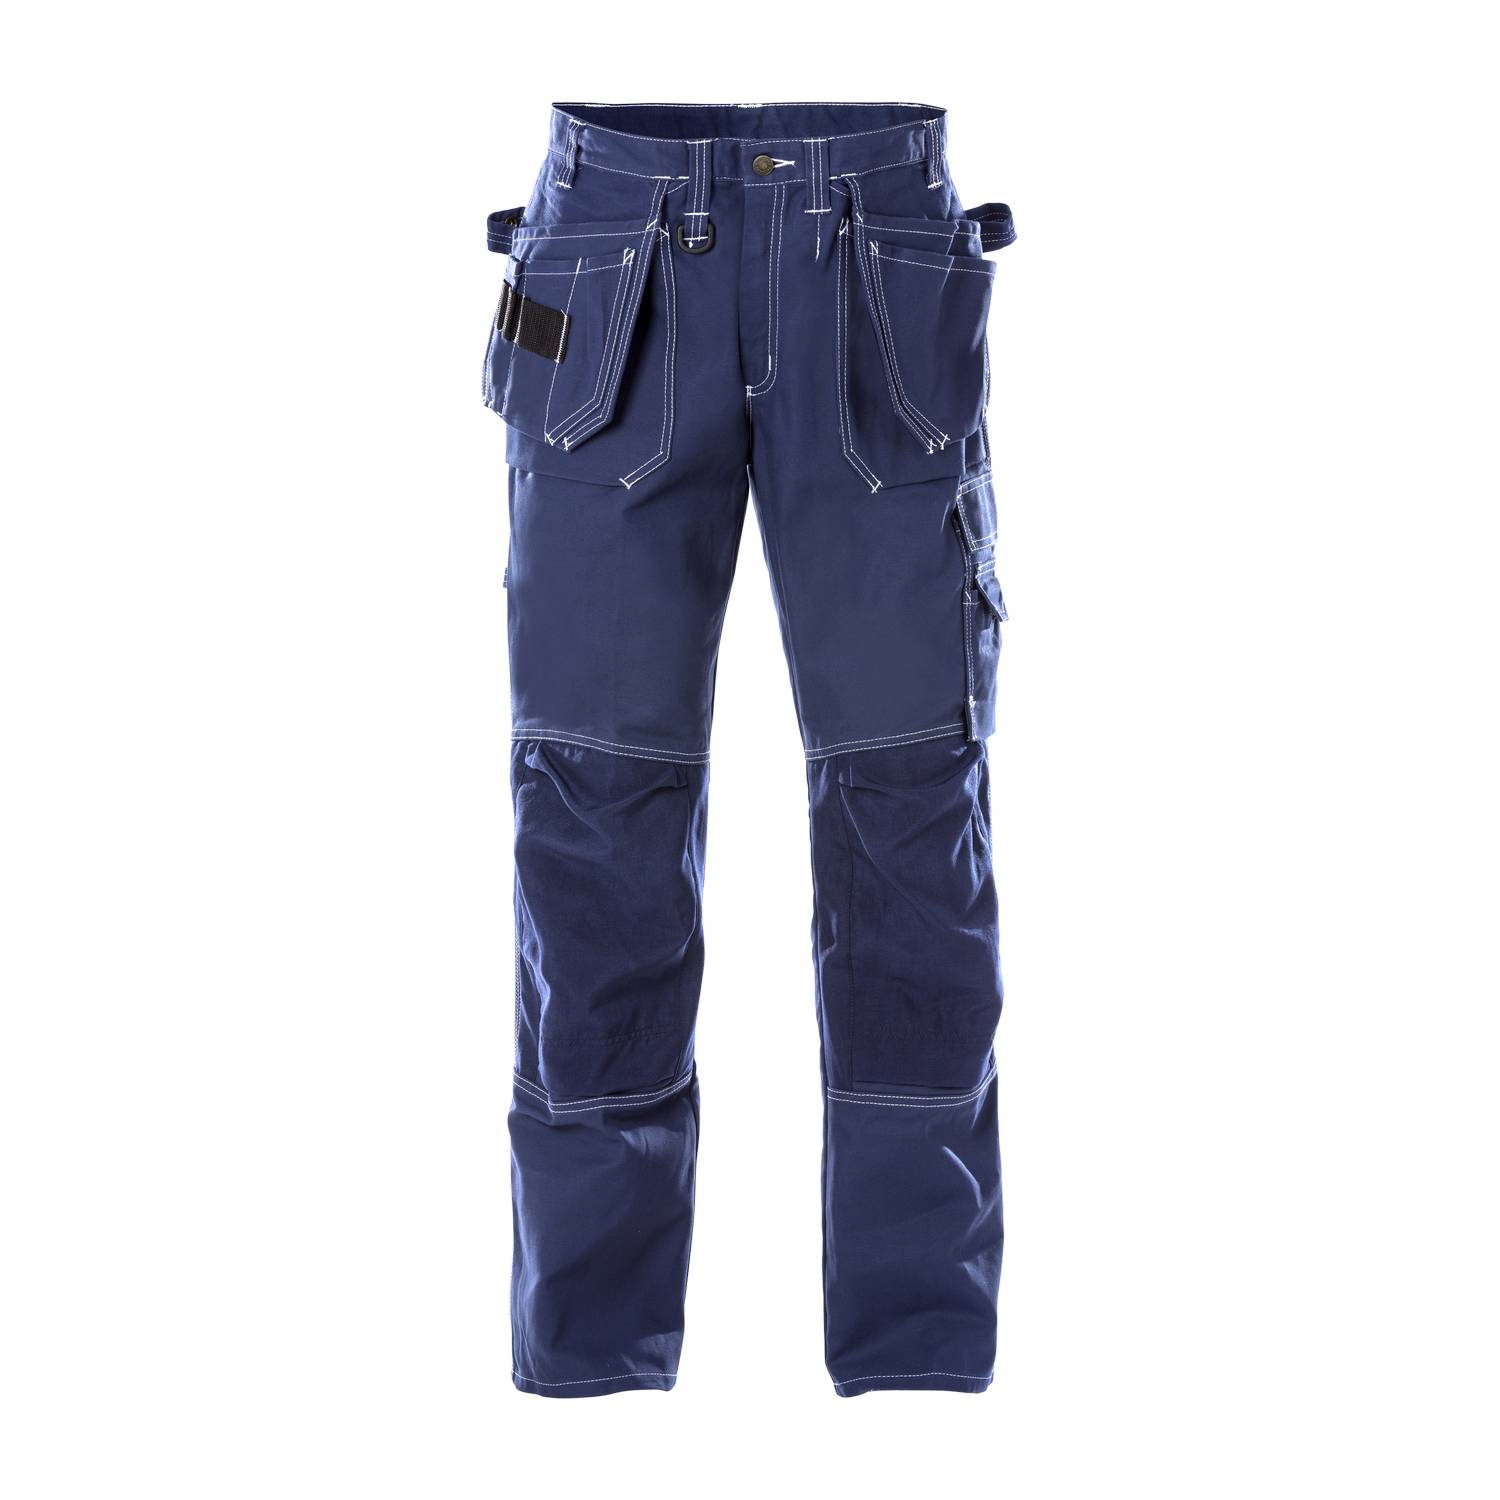 Fristads radne hlače s dodatnim džepovima 100282-541